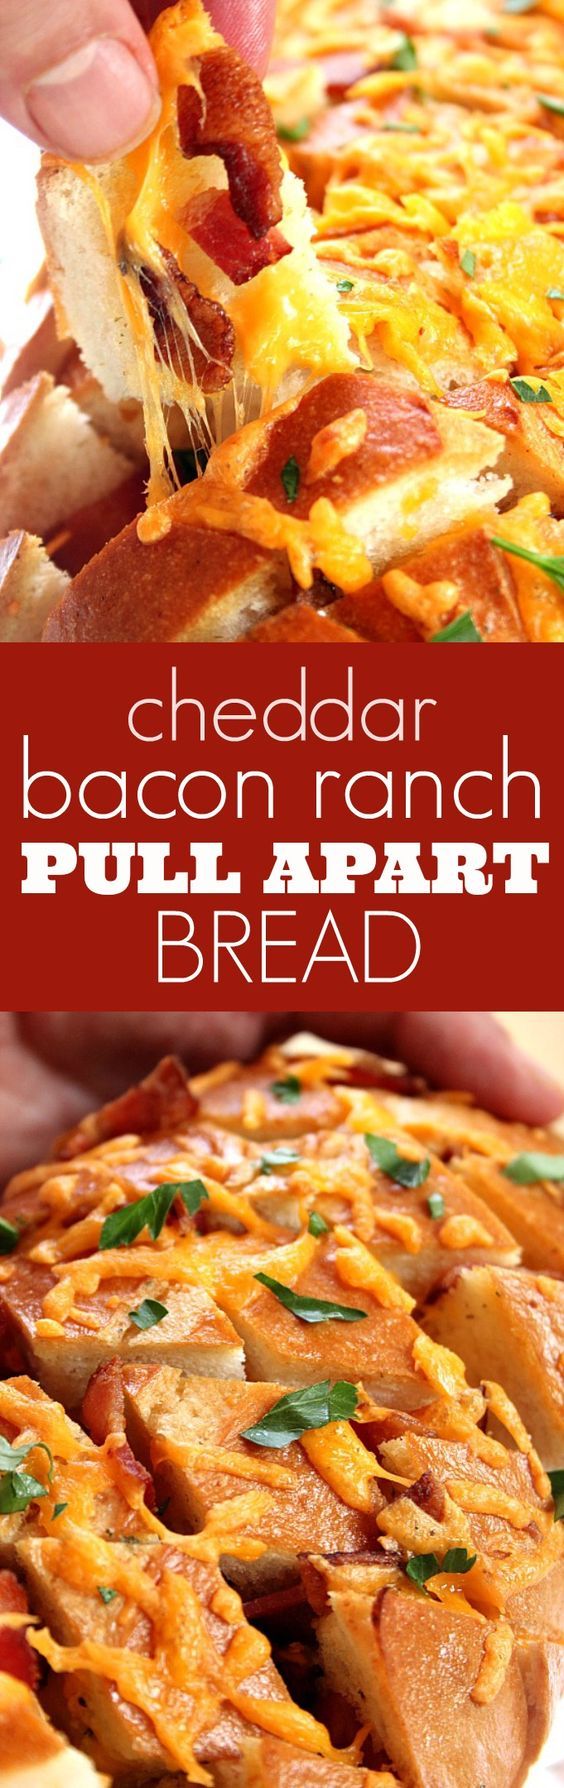 Cheddar Bacon Ranch Pull Apart Bread